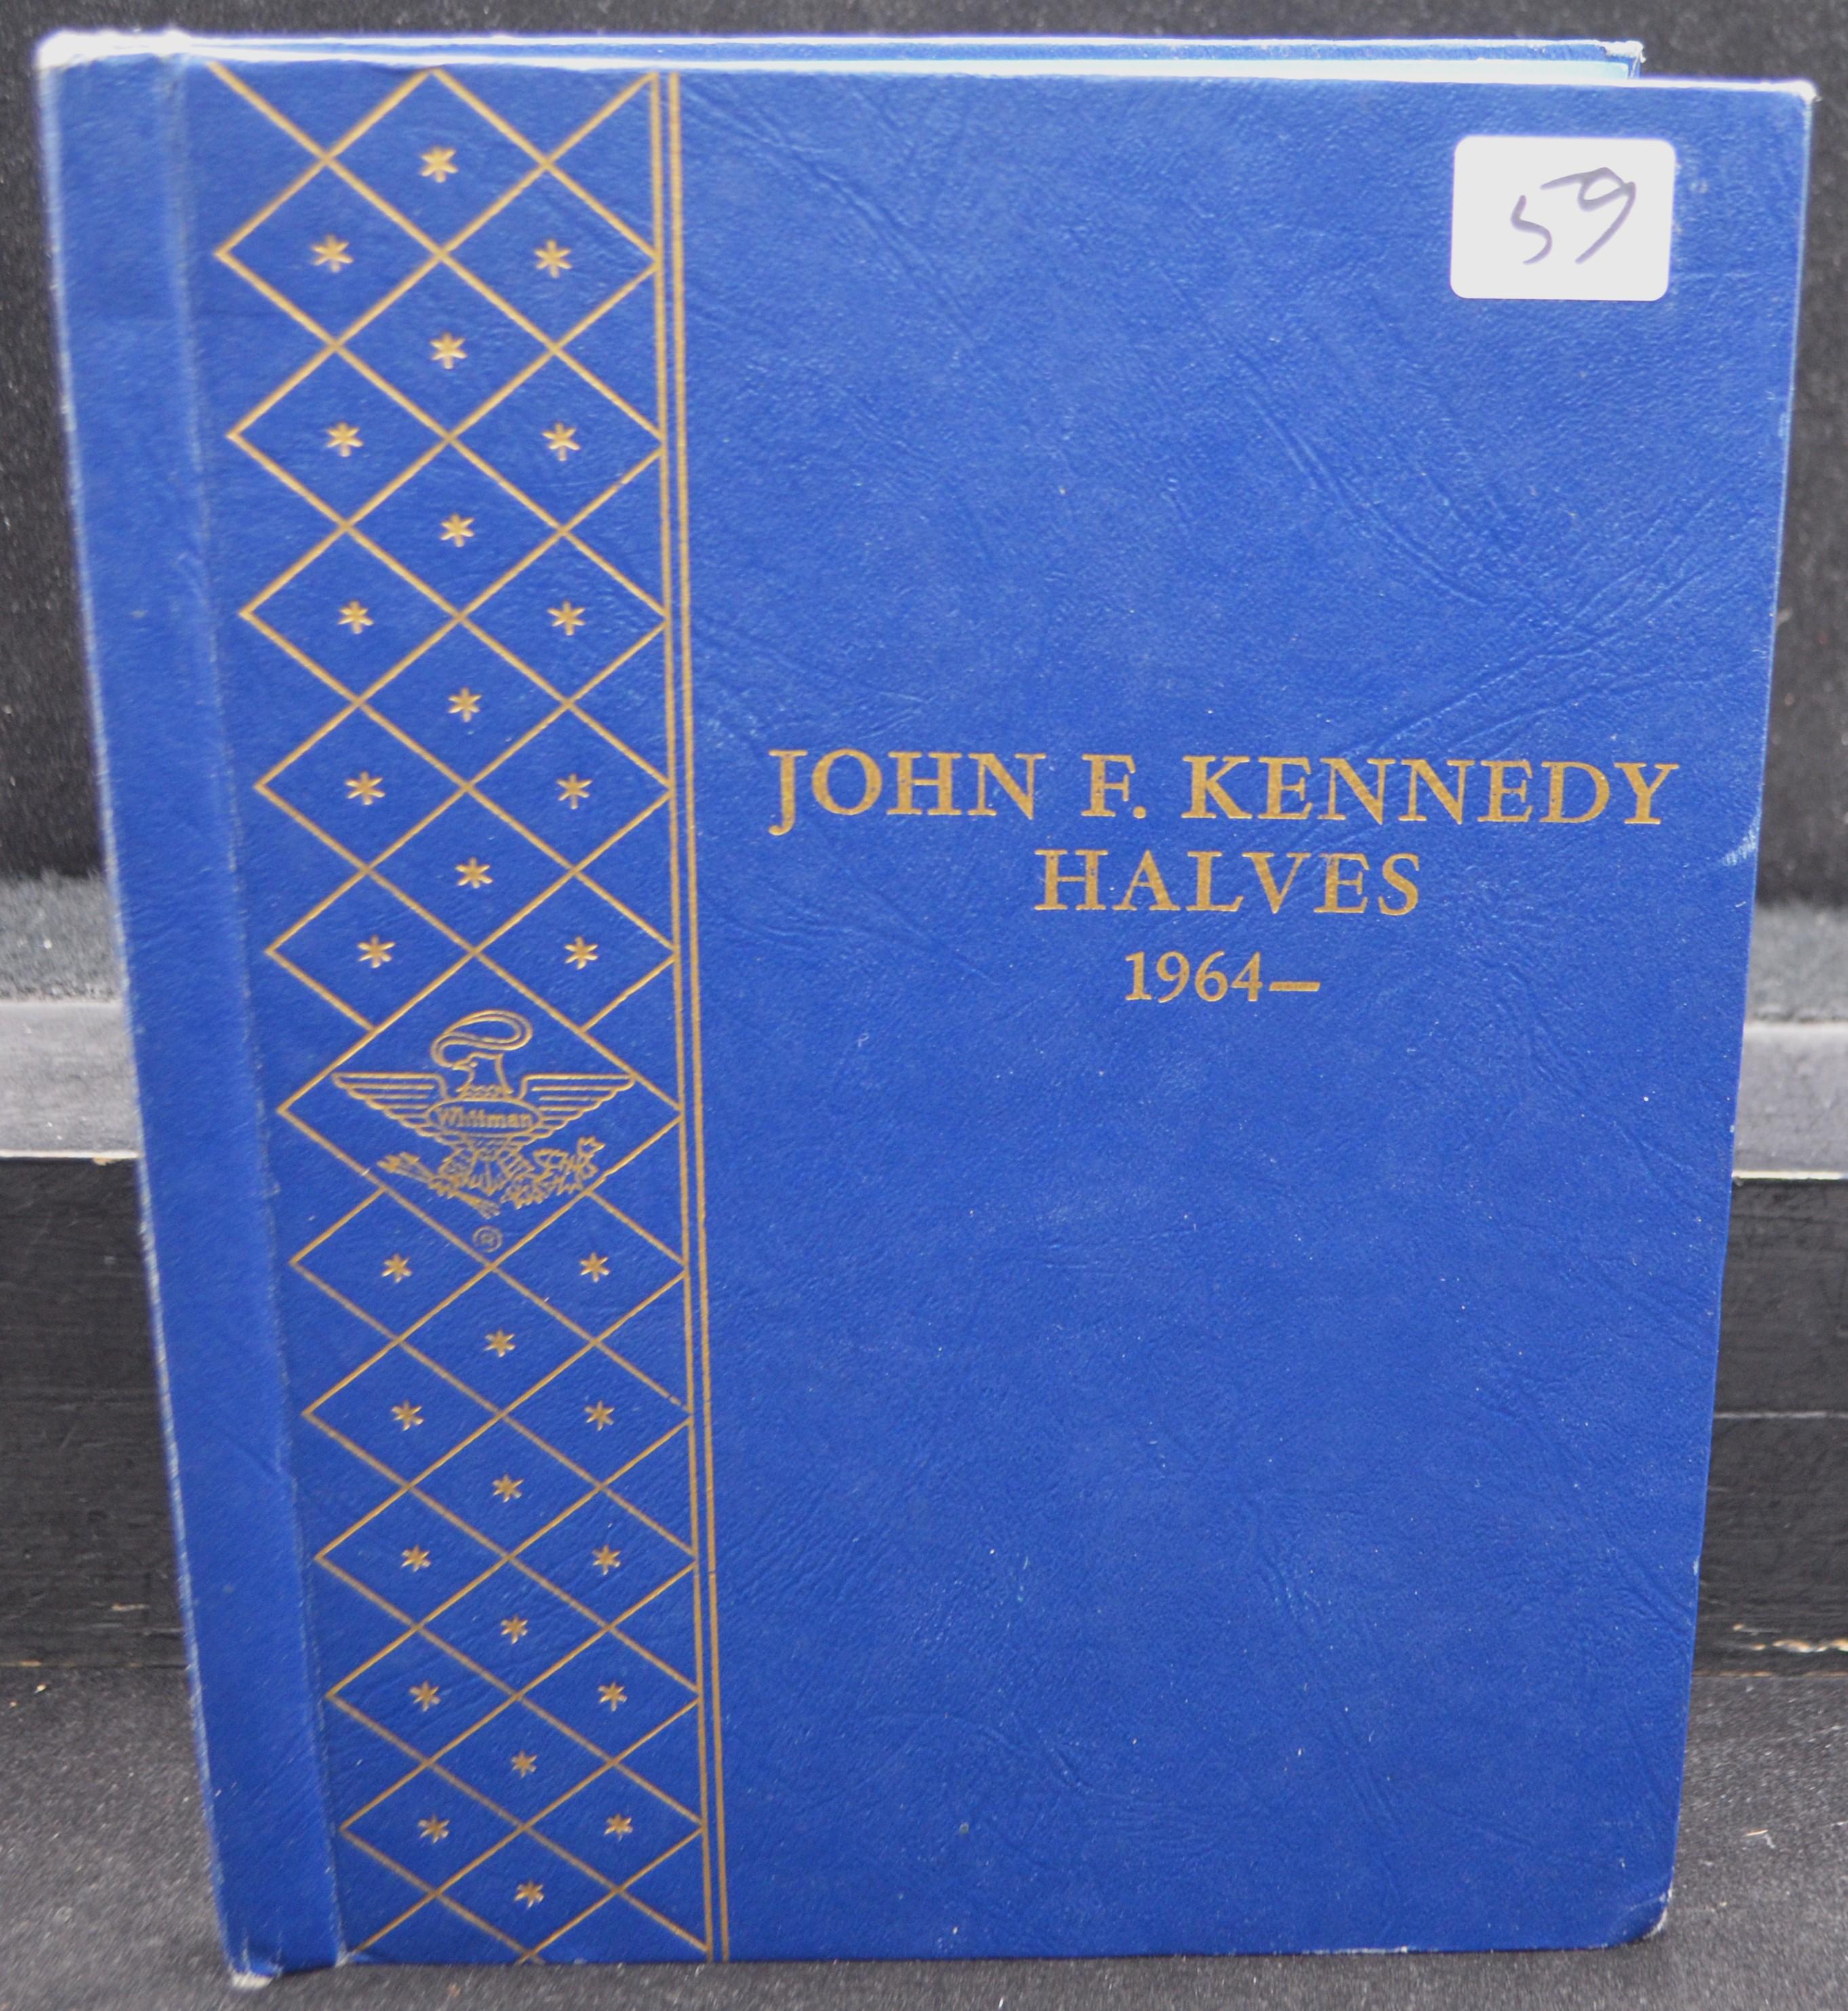 BOOK OF 32 BU KENNEDY 1964 SILVER HALF DOLLARS